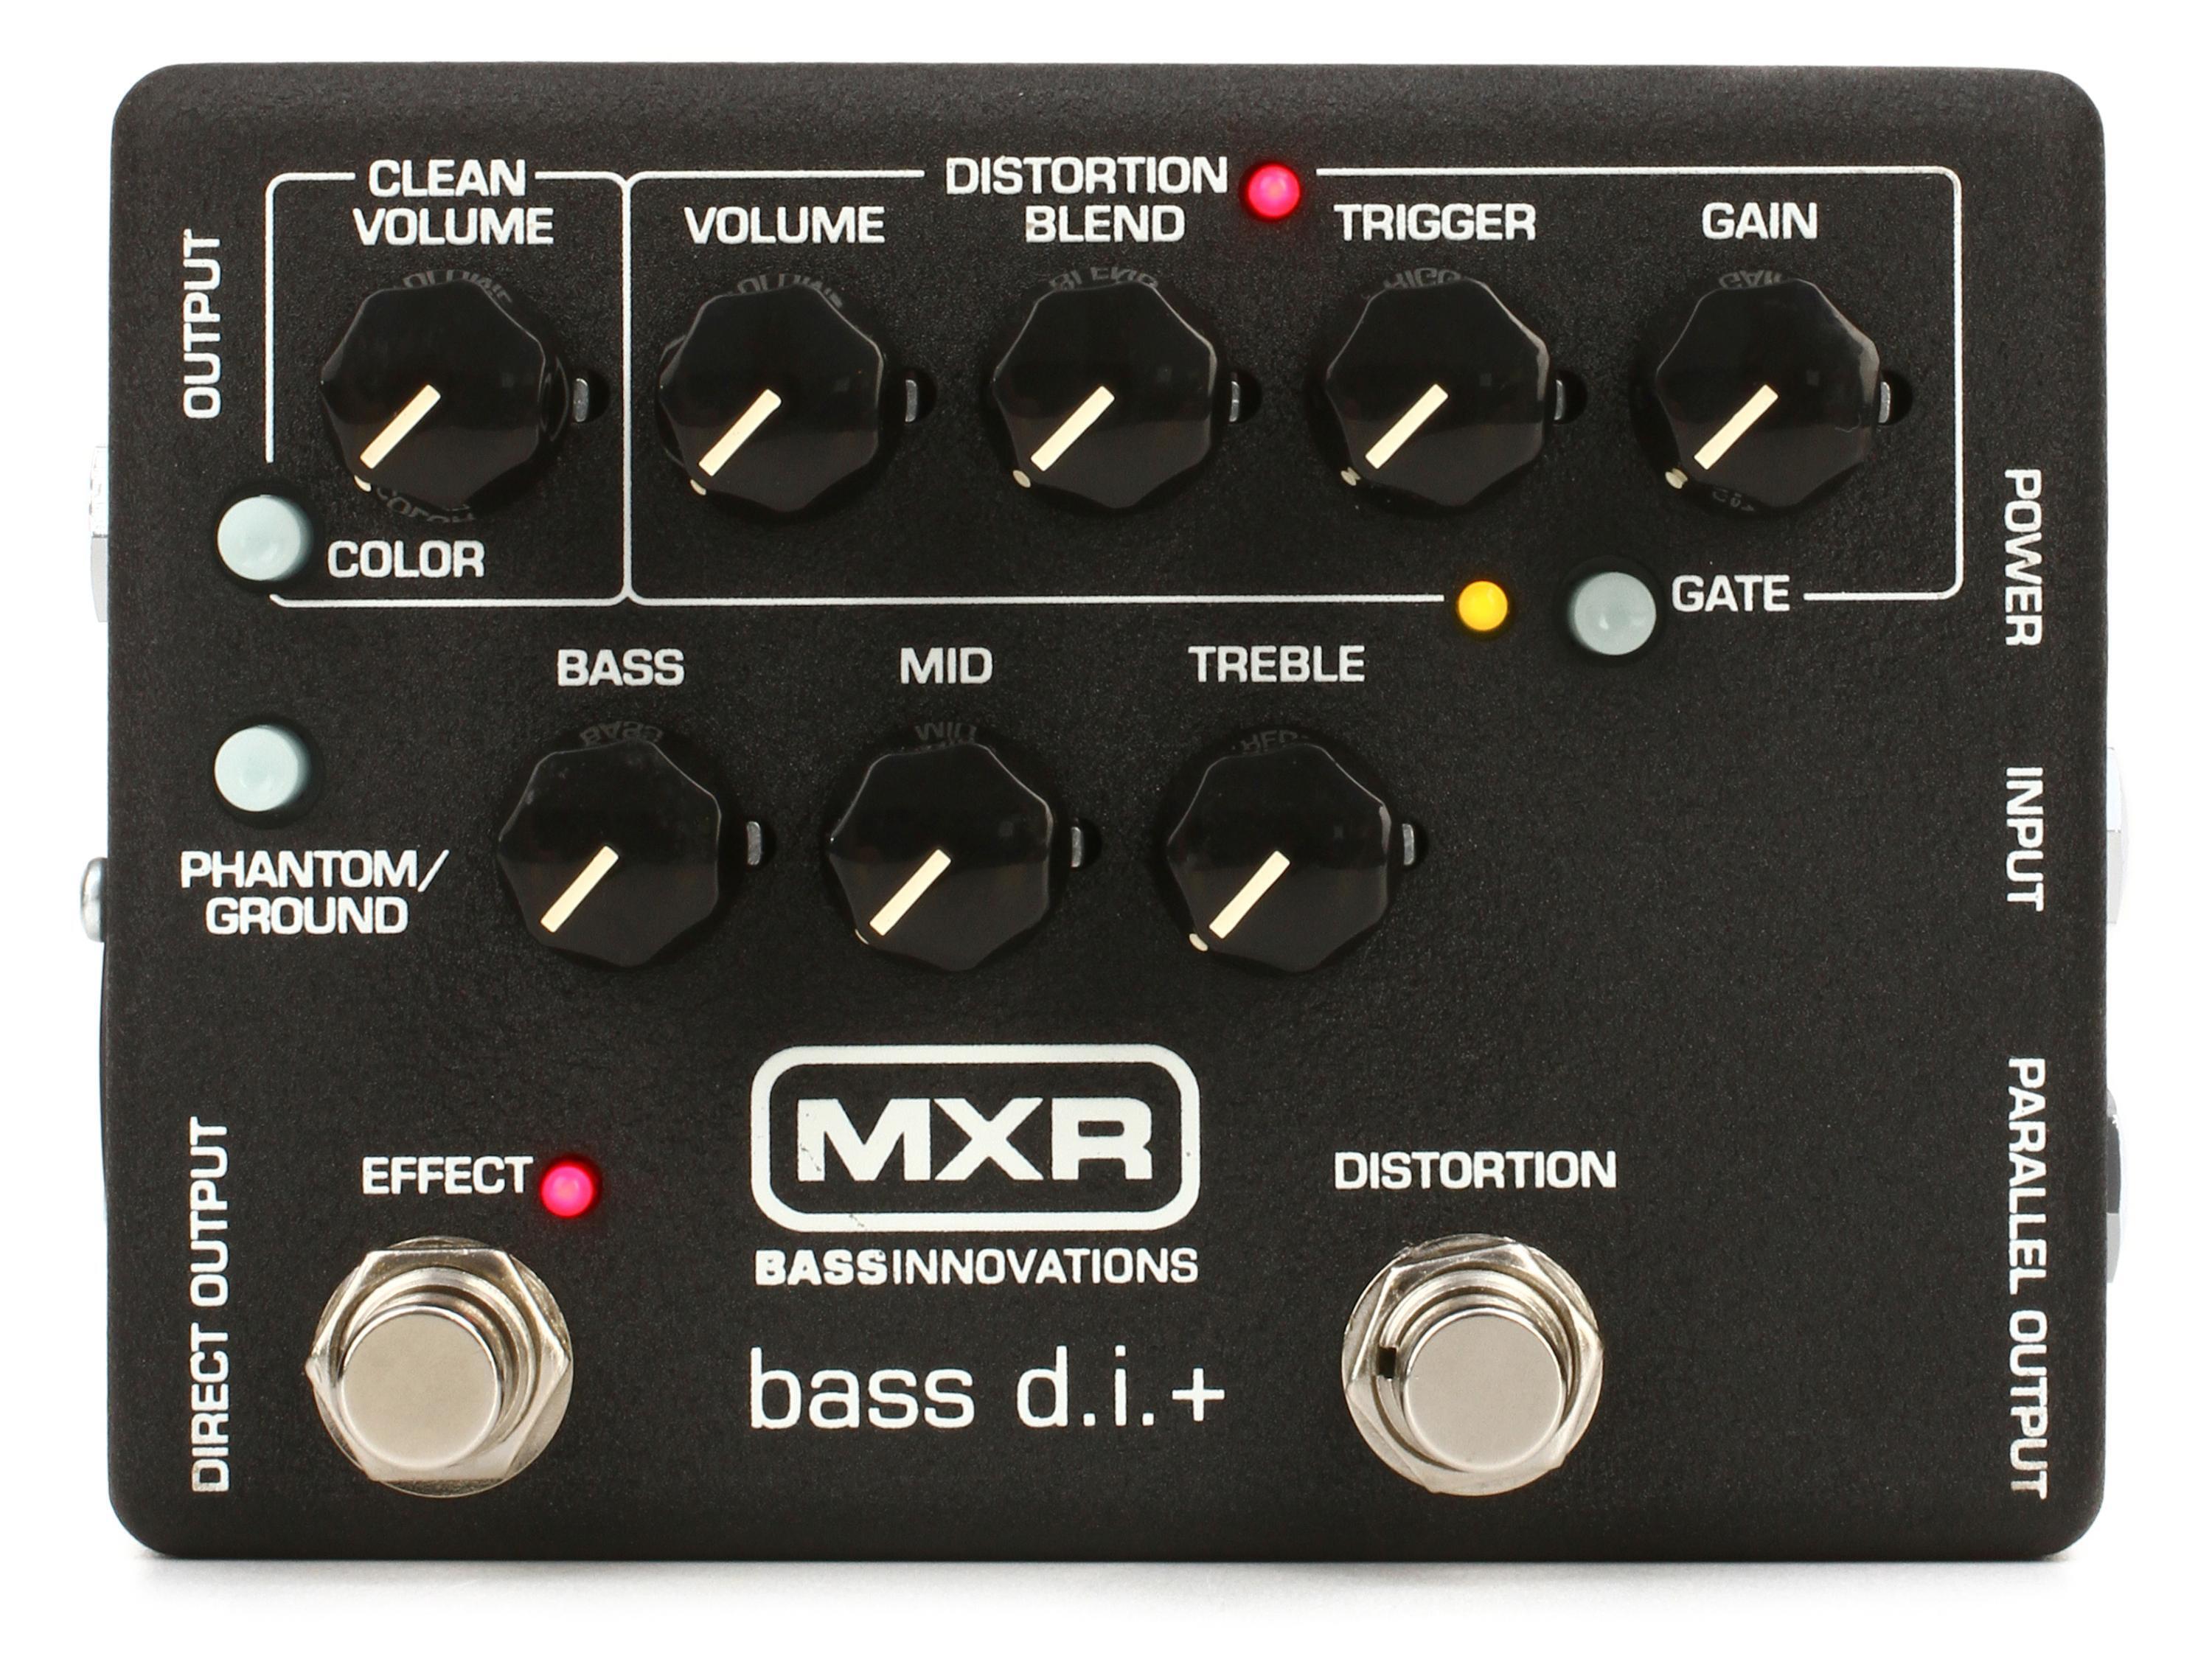 Bundled Item: MXR M80 Bass D.I.+ Bass Distortion Pedal